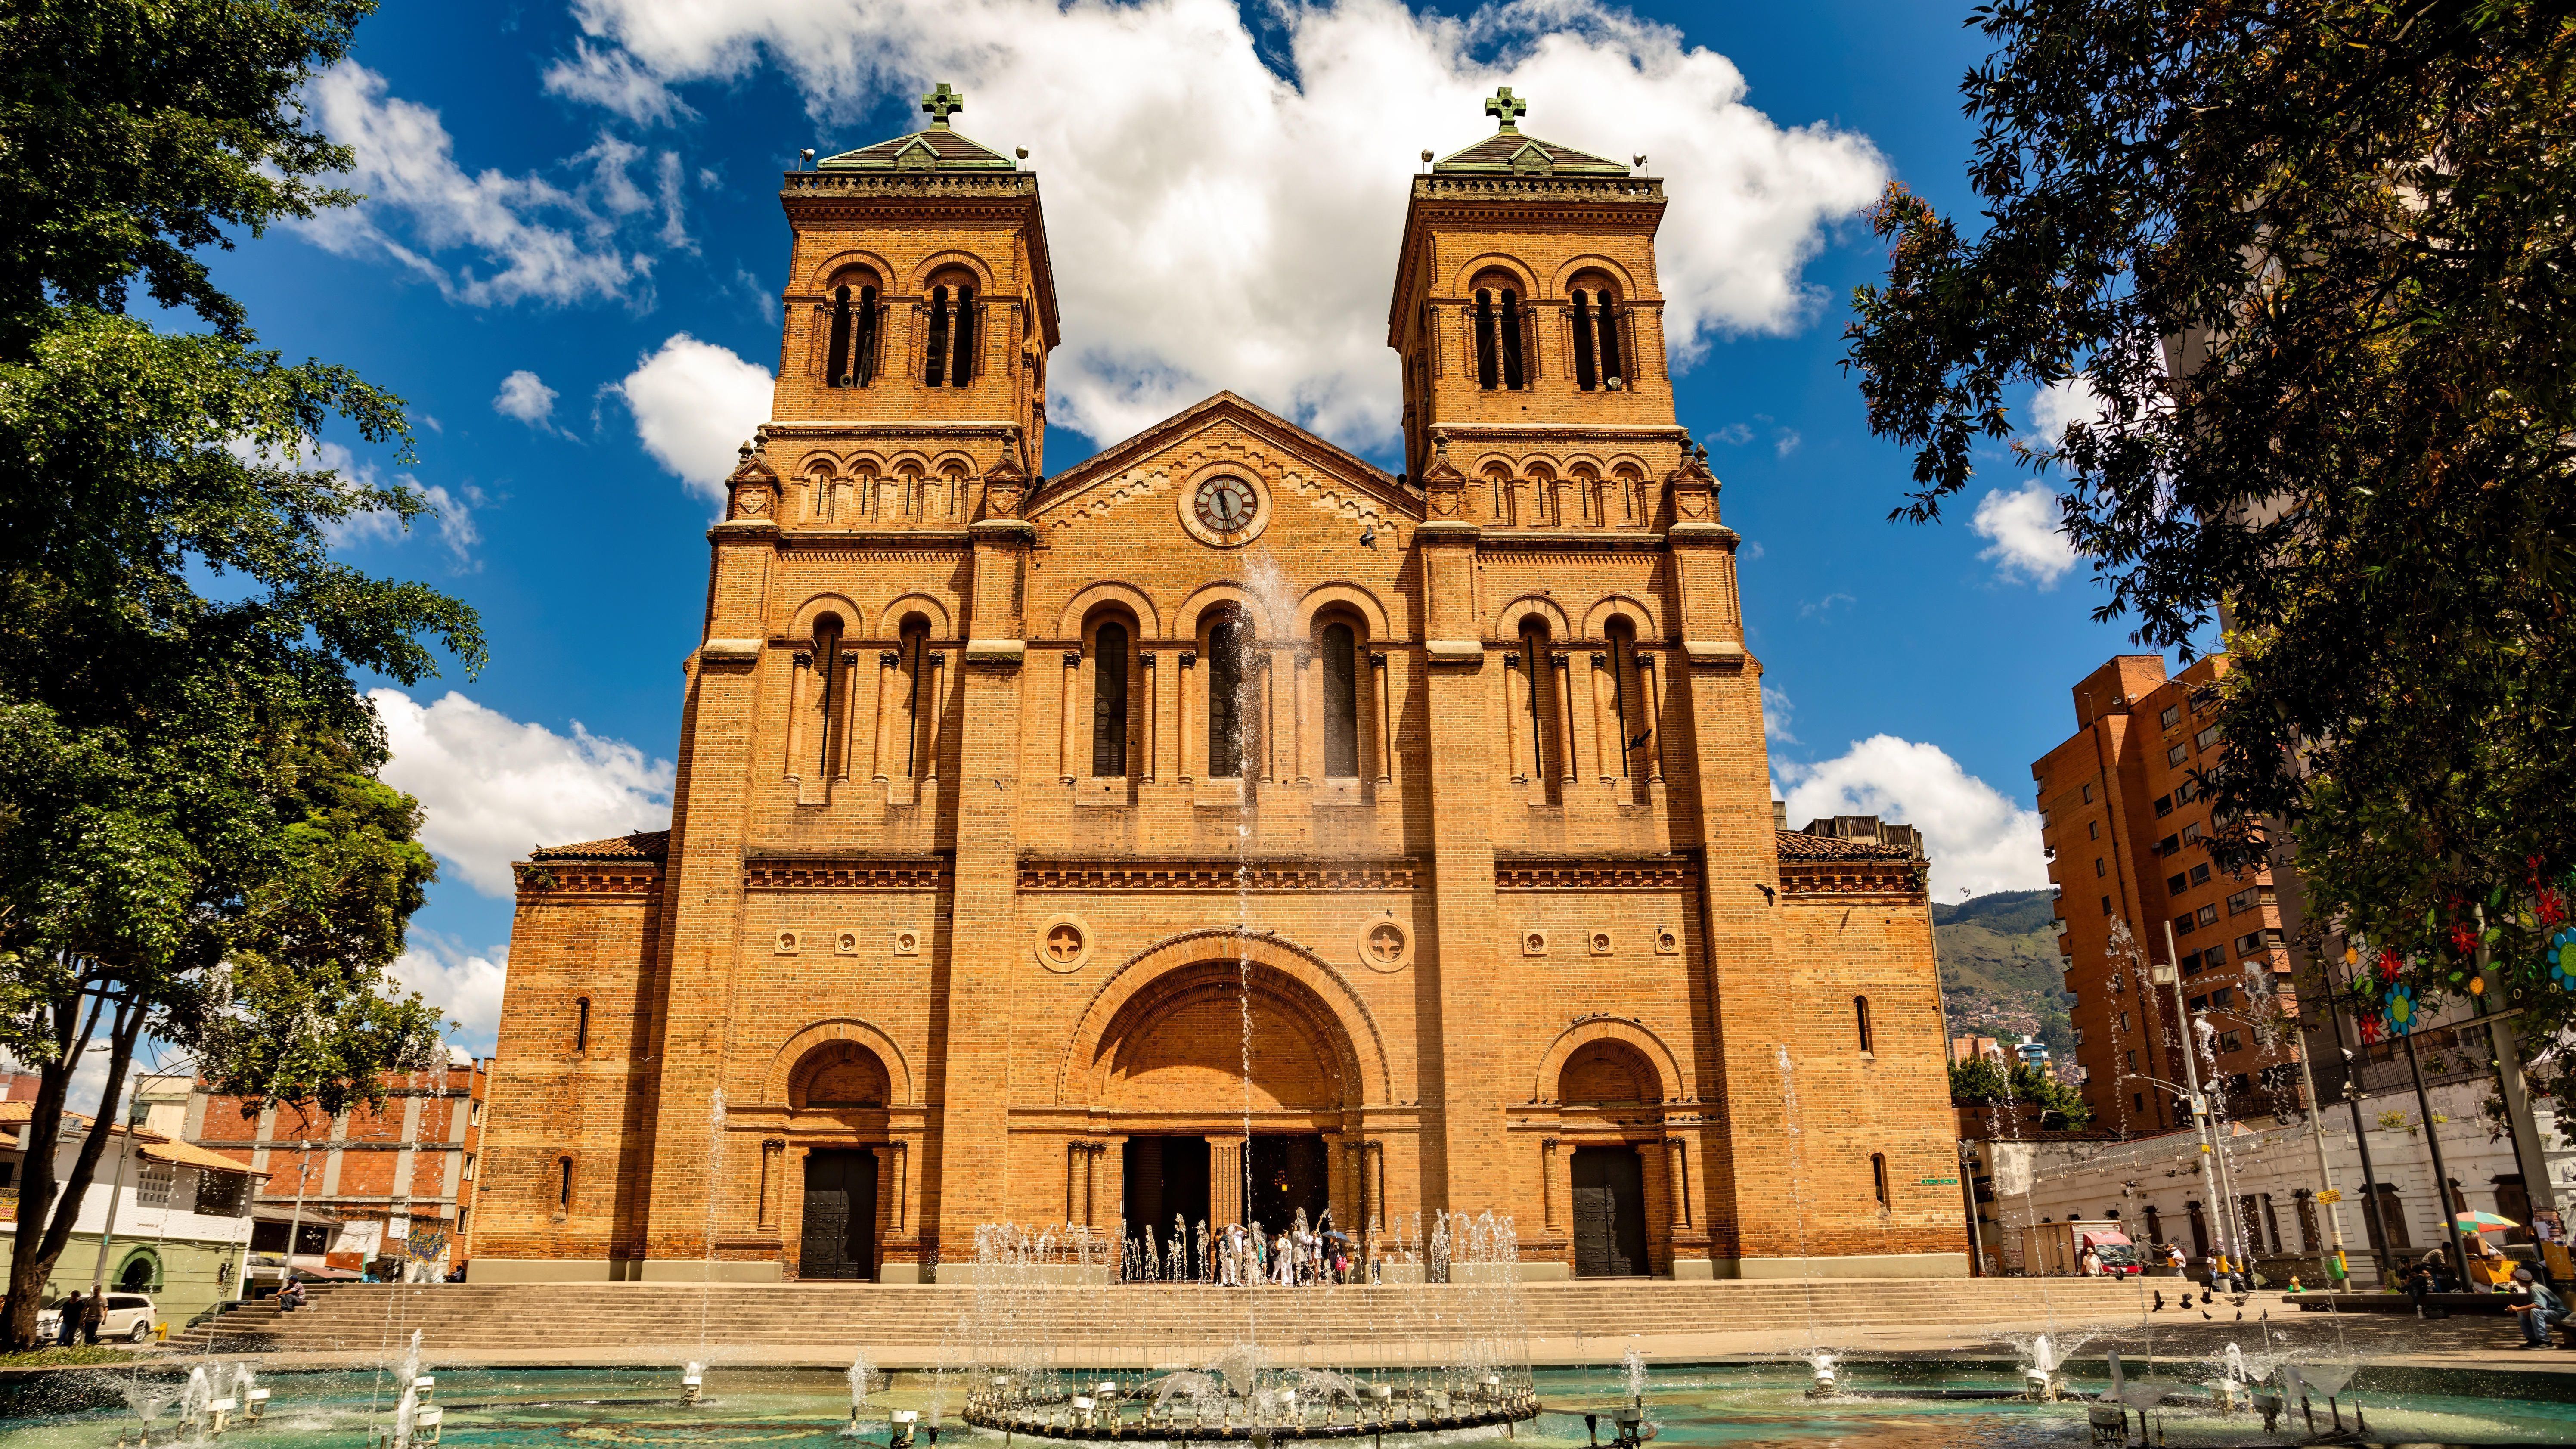 Die neuromanische Basilika des Erzbistums besteht aus Lehmziegeln und ist 53 Meter hoch. Die Fläche beträgt 5.000 Quadratmeter. 1890 wurde mit dem imposanten Sakralbau begonnen, fertiggestellt wurde er 1931 und liegt am Parque de Bolivar.